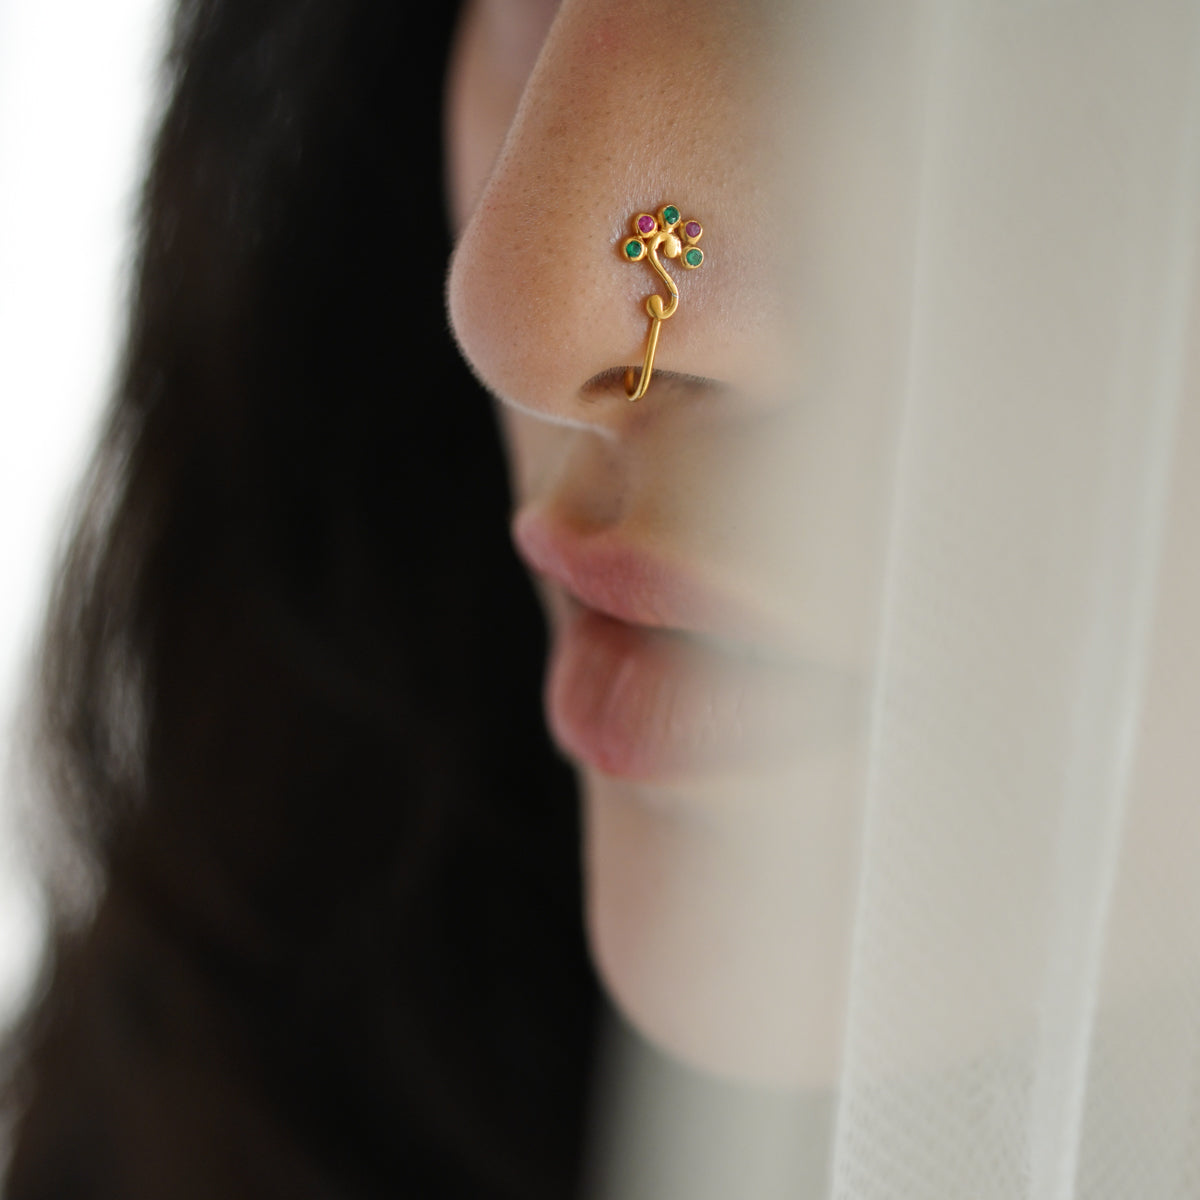 a close up of a woman's nose with a ring on it